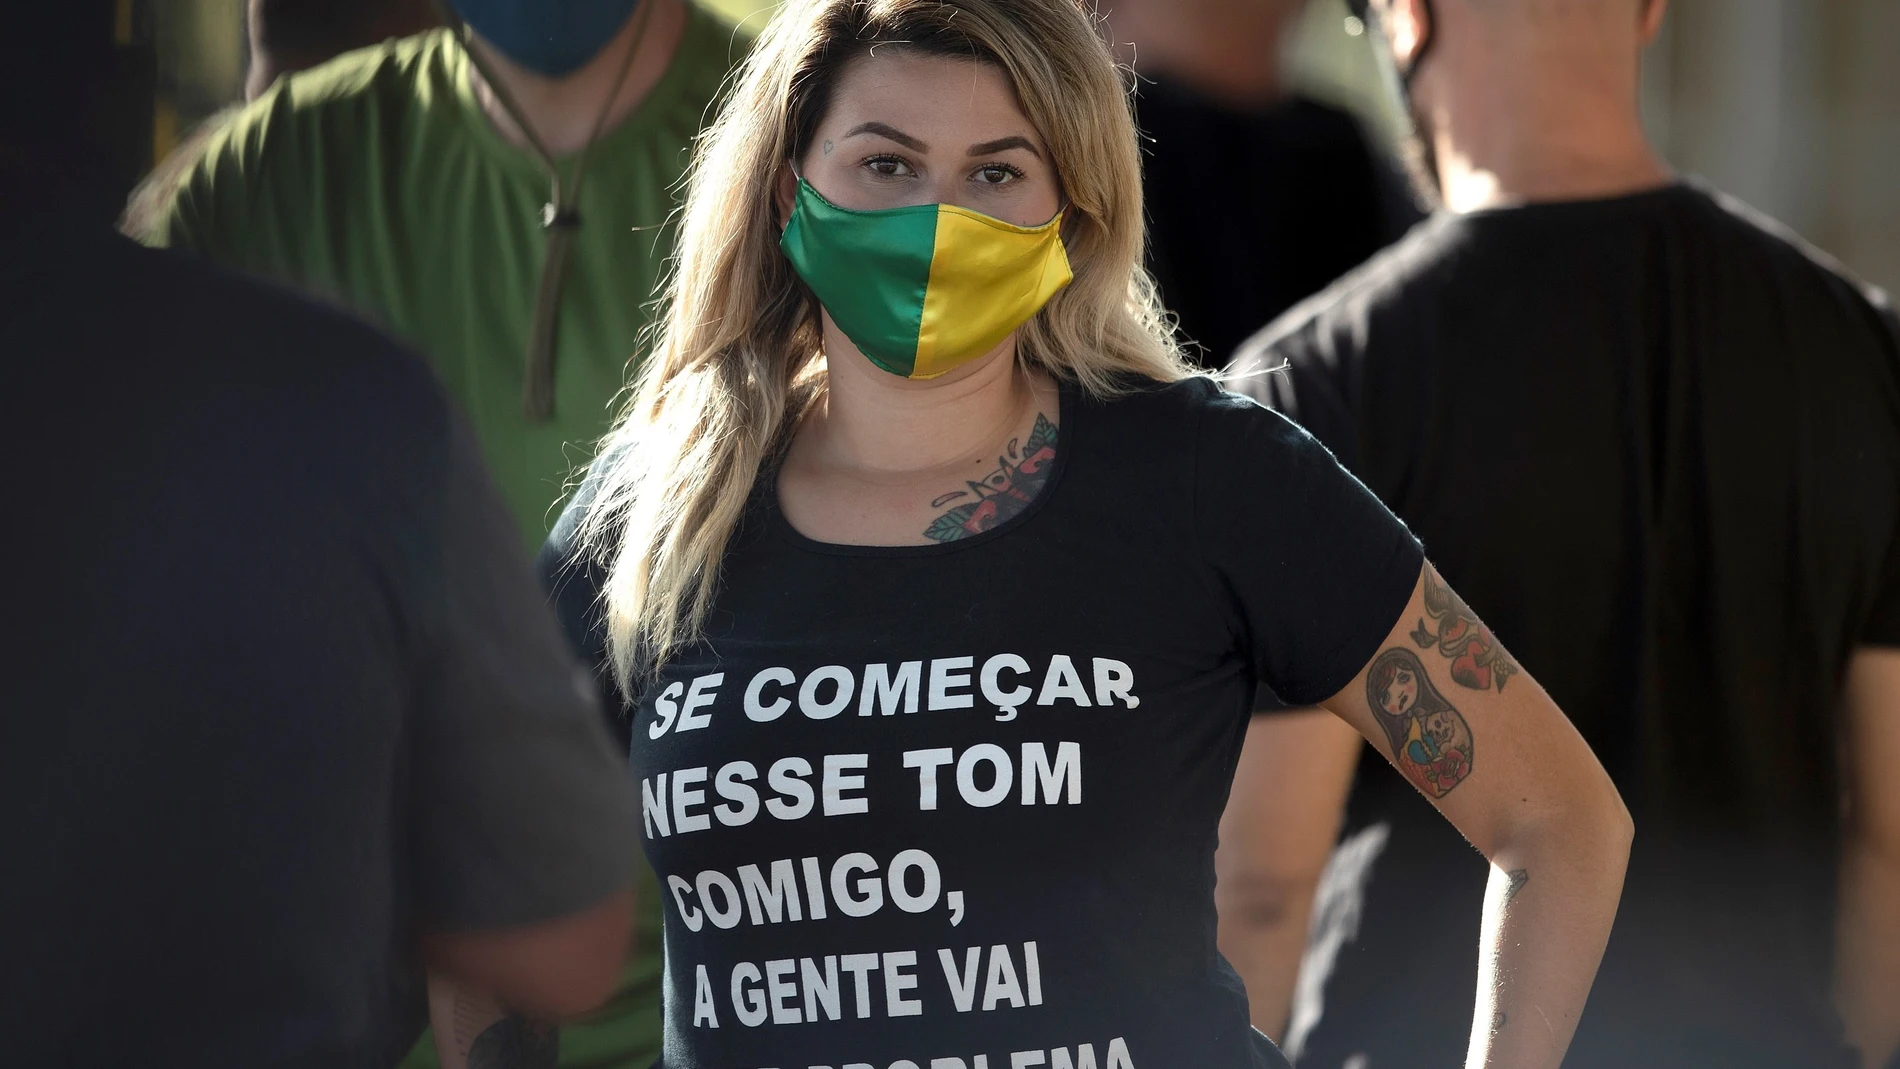 Arrestan a militantes bolsonaristas por ataques a la democracia en Brasil